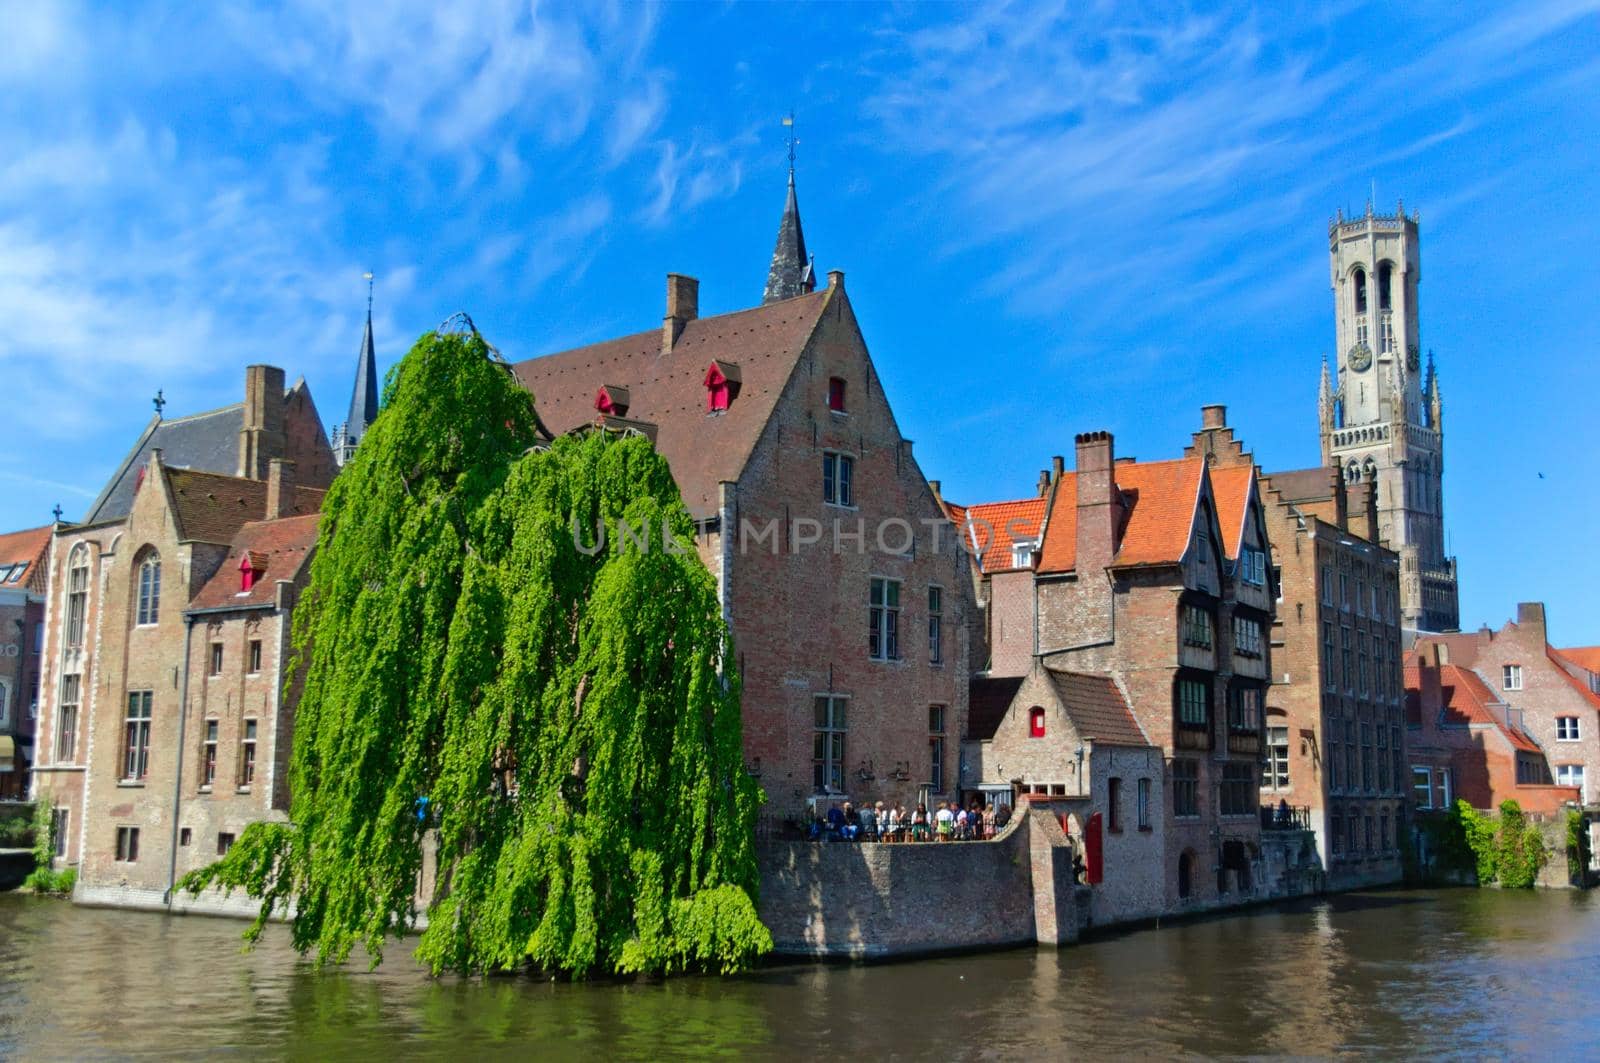 Corner in the canals of Brugge, Belgium. by hernan_hyper